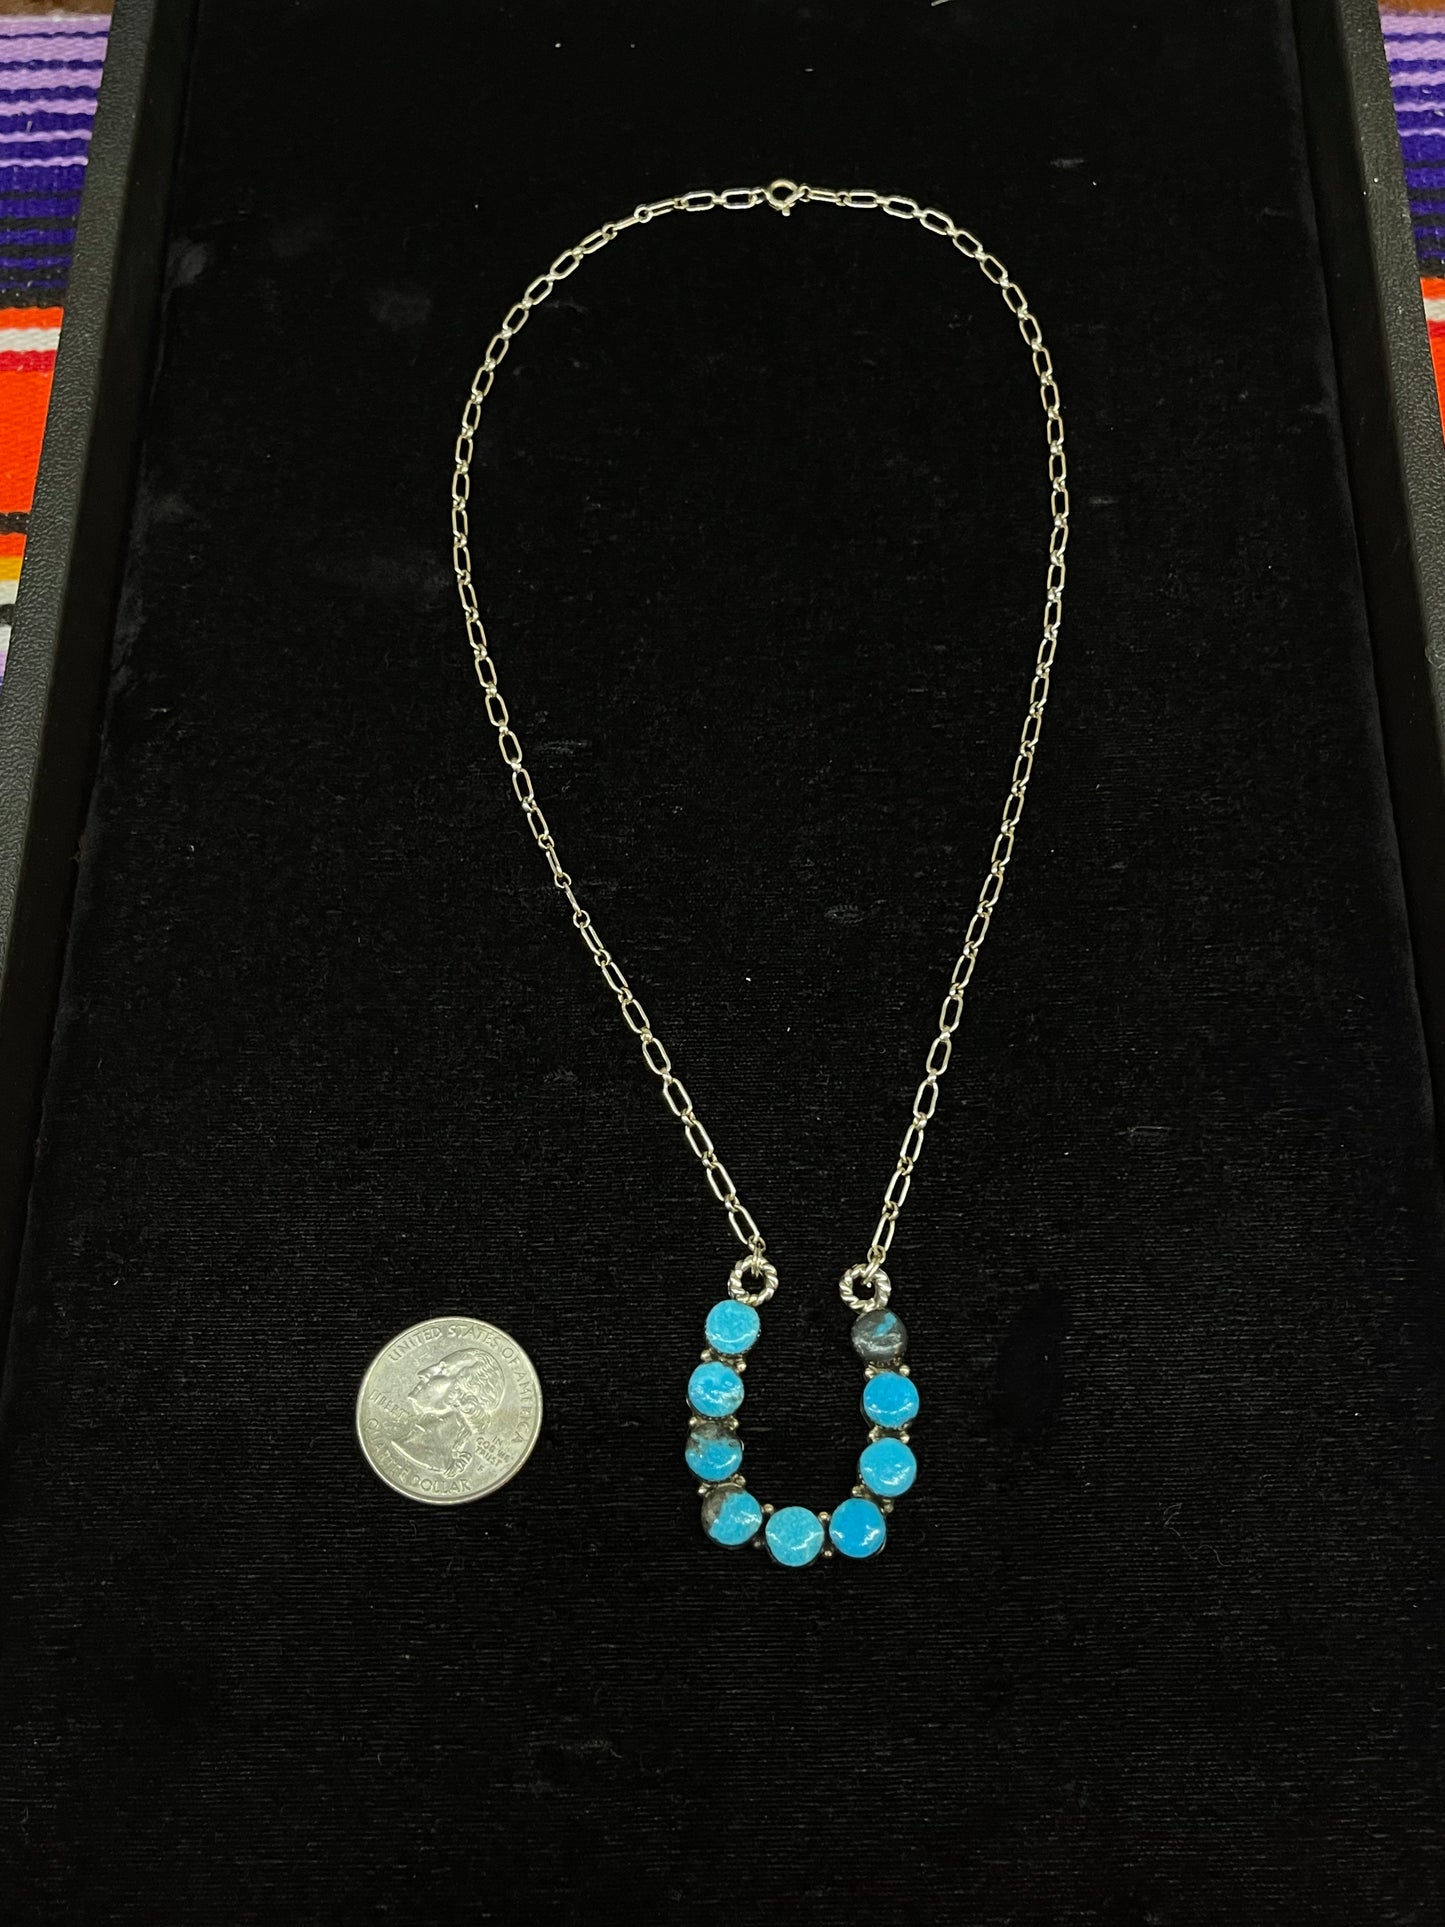 Horseshoe Necklace with Turquoise Stones